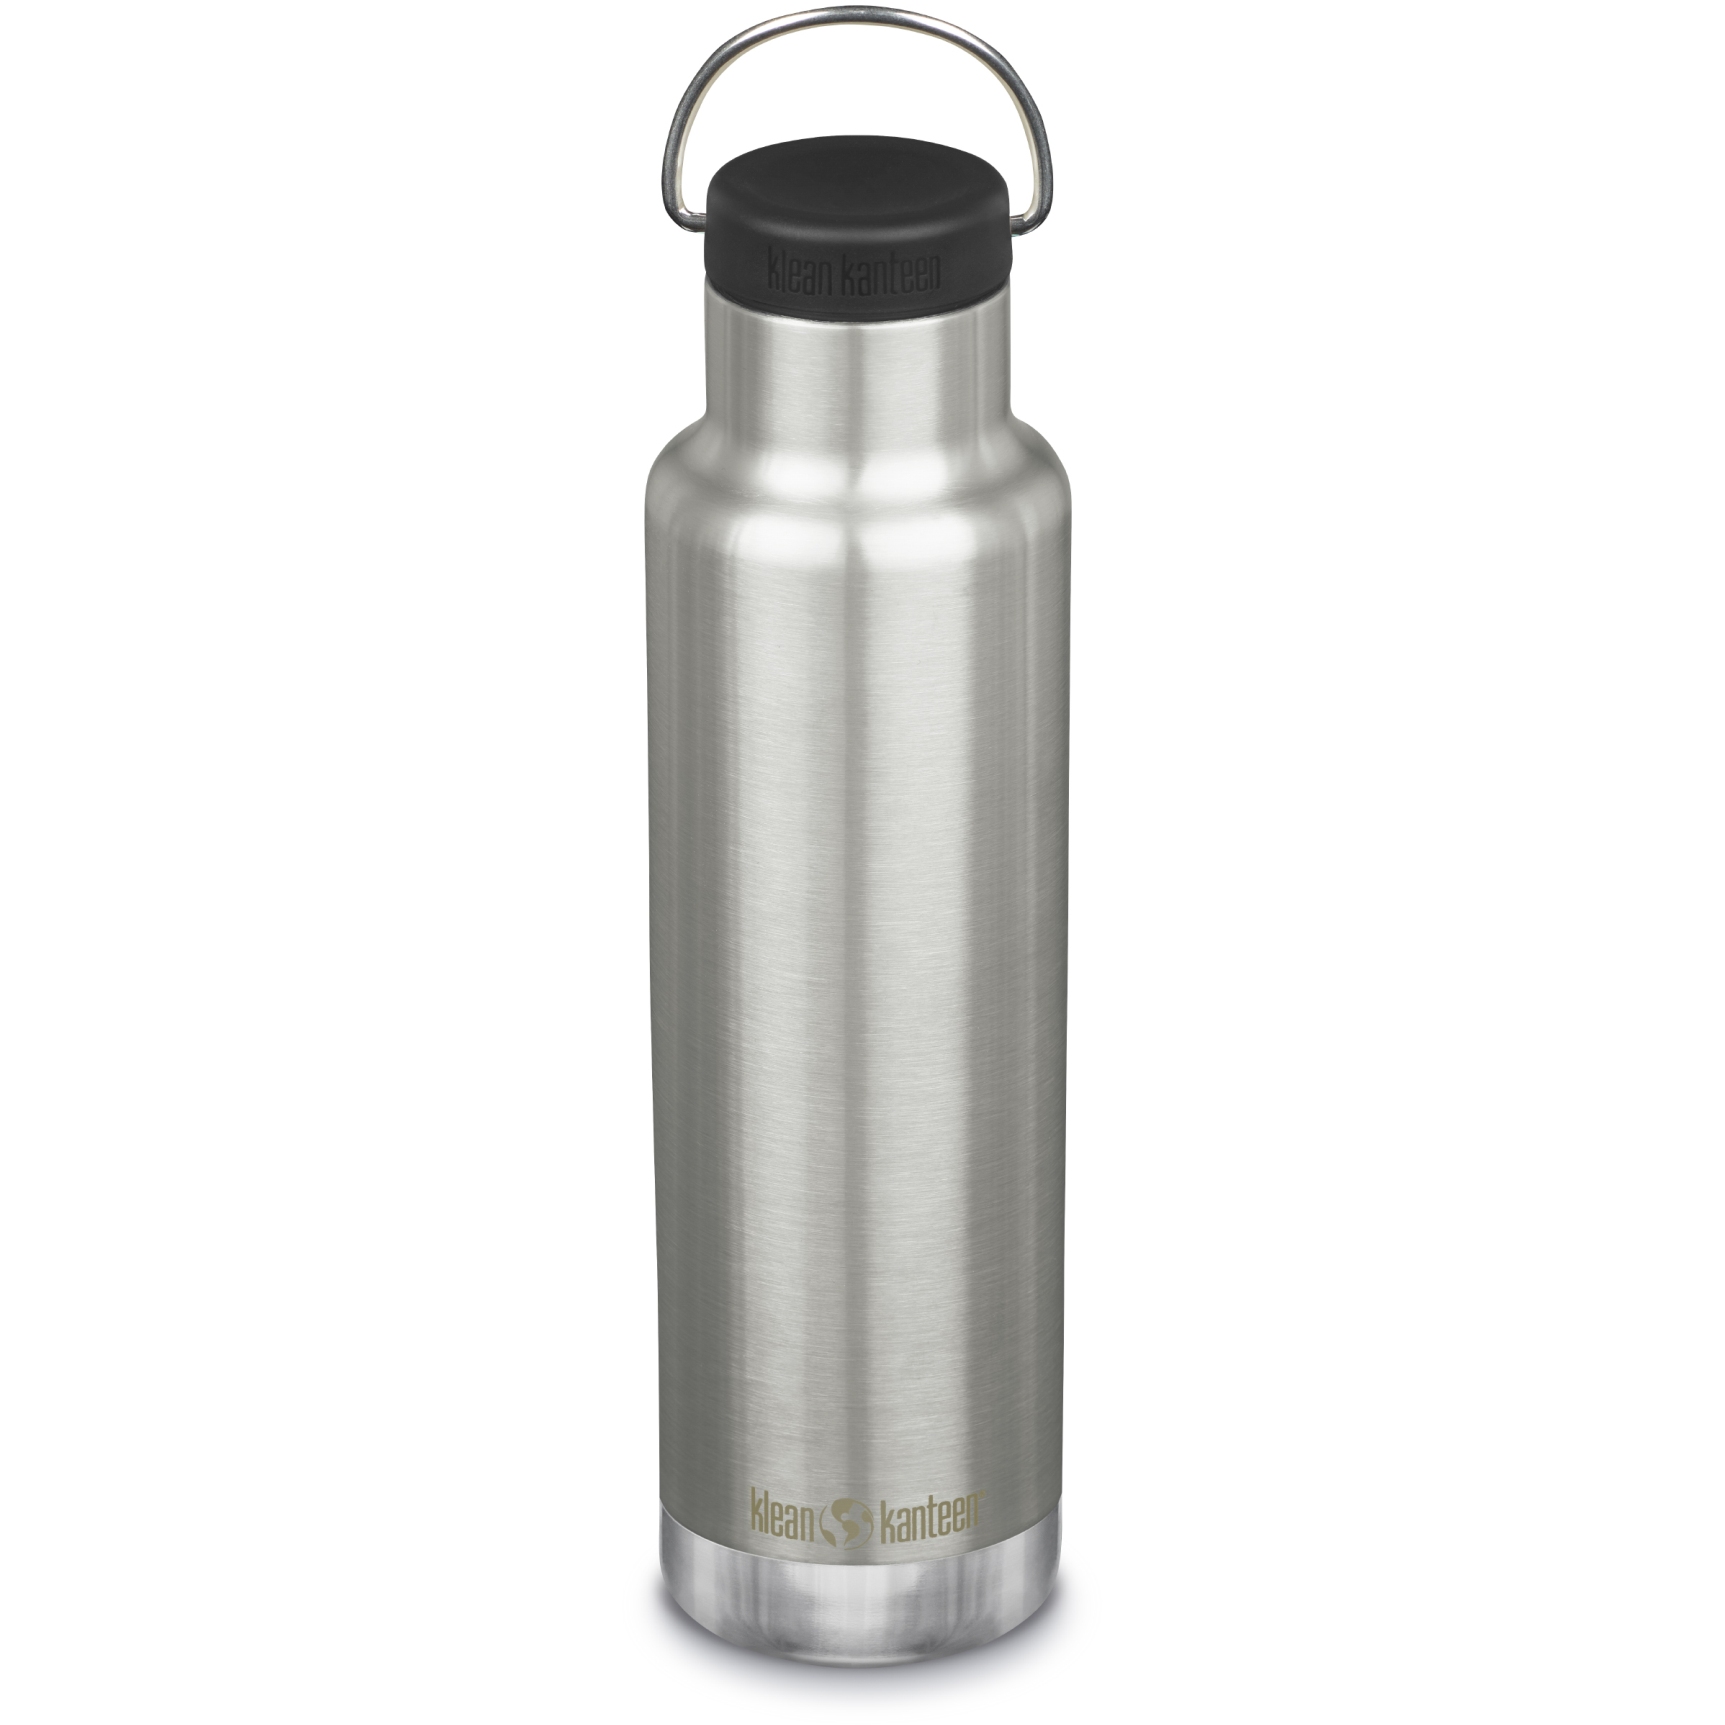 Produktbild von Klean Kanteen Classic Isolier-Trinkflasche mit Loop Cap - 592 ml - brushed stainless